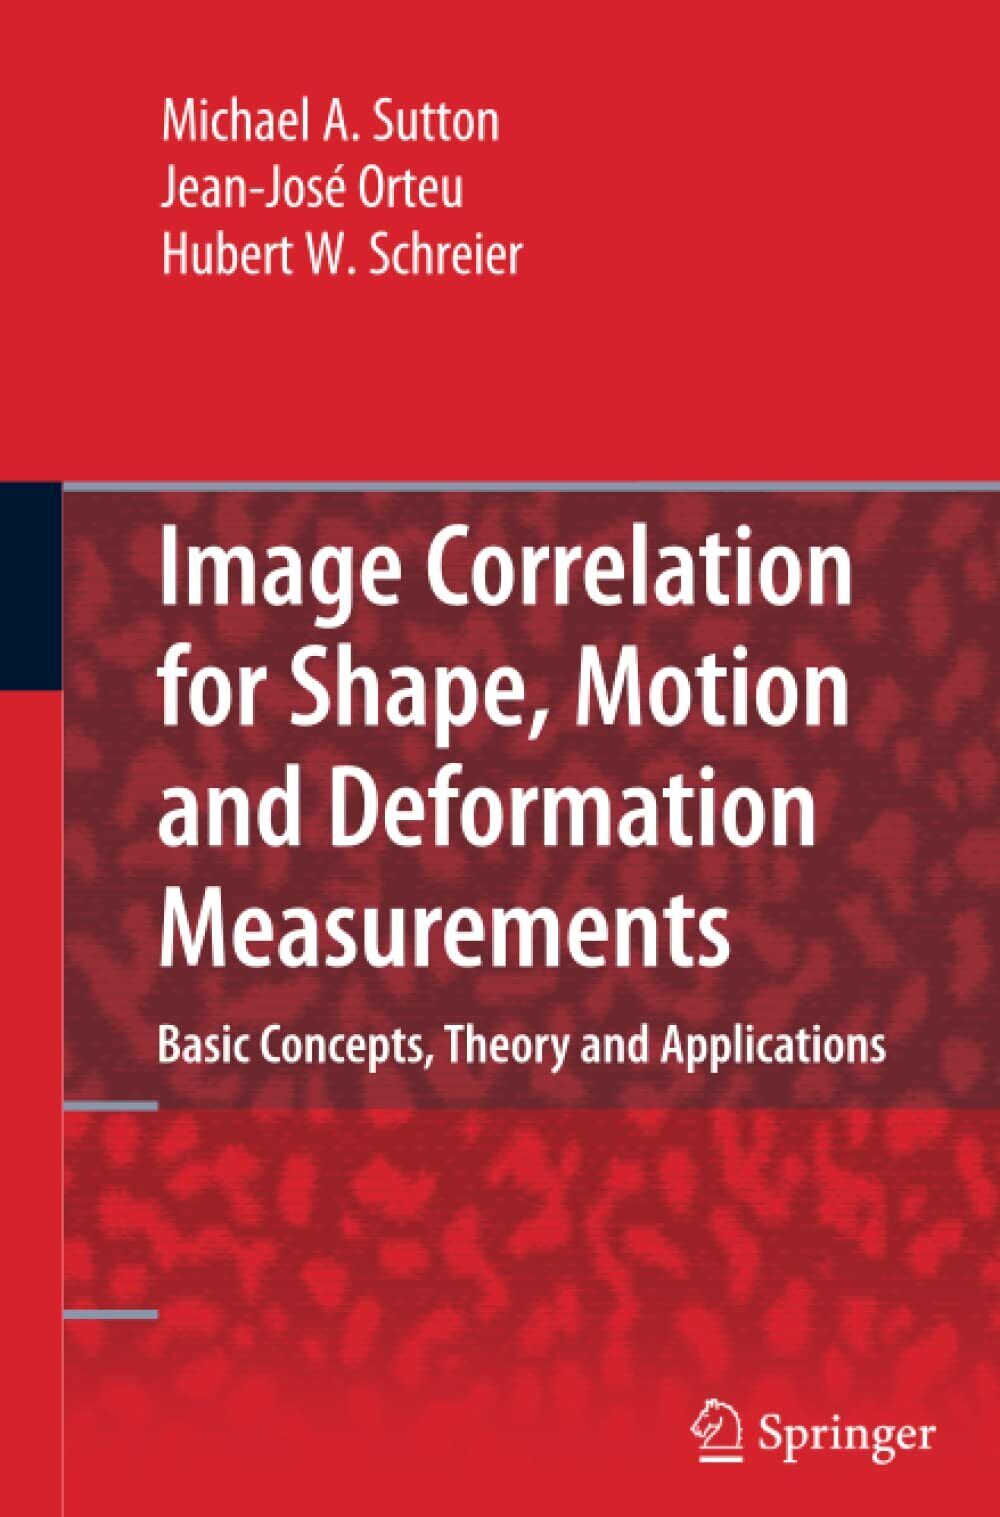 Image Correlation for Shape, Motion and Deformation Measurements - Springer,2010